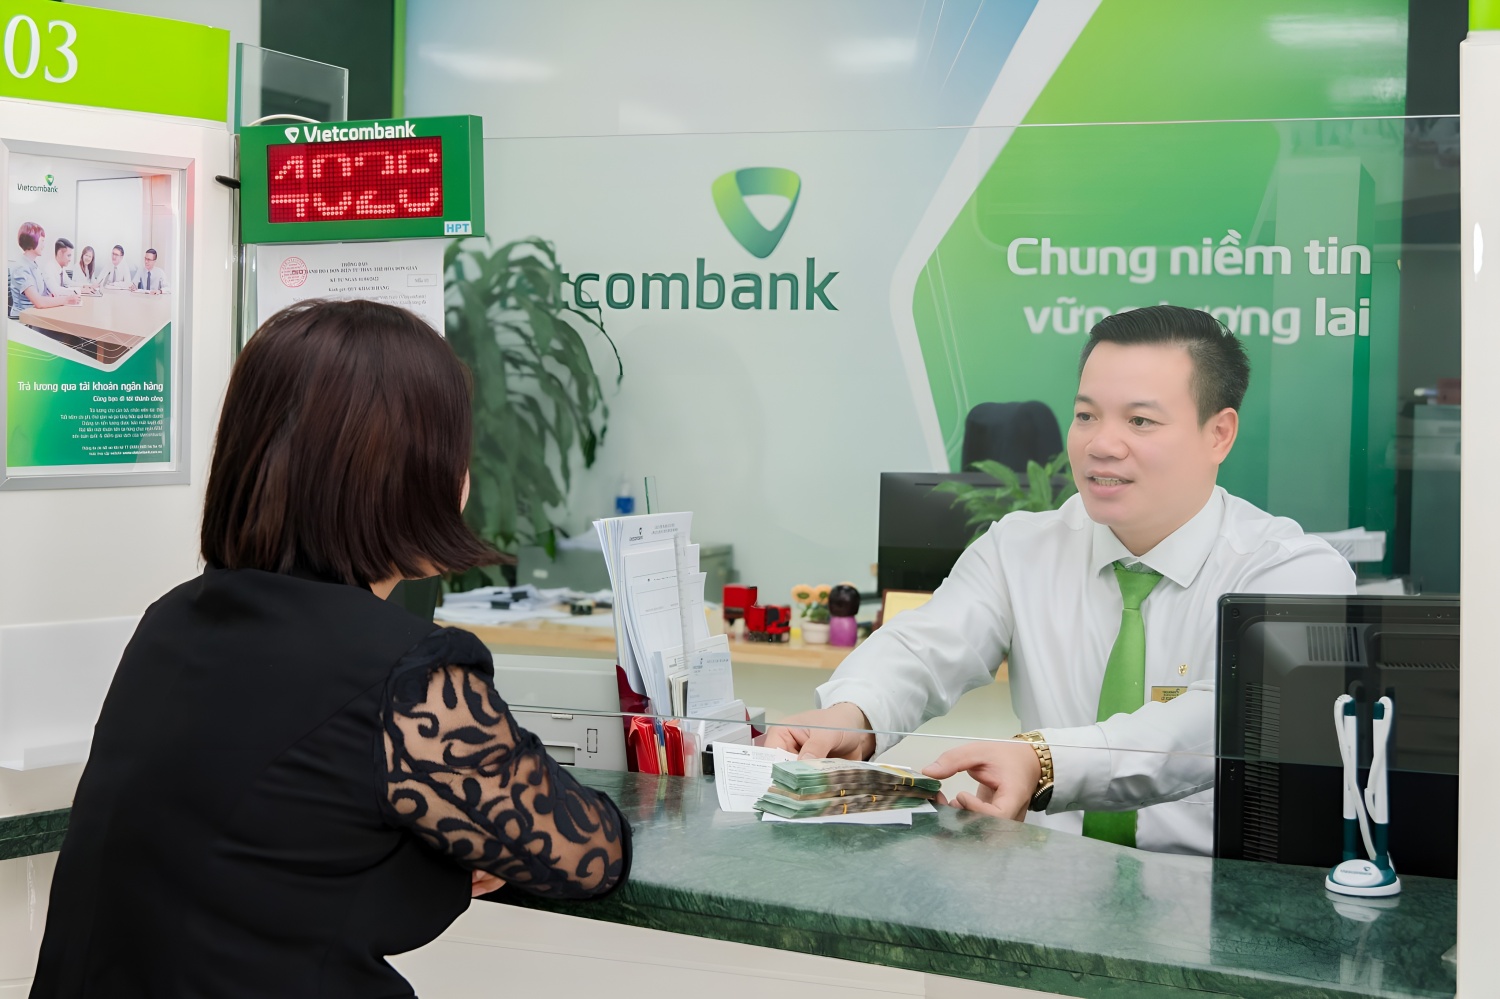 Gương sáng tại PGD Như Quỳnh – Vietcombank Hưng Yên: “Gian nan” thuyết phục khách hàng trước cạm bẫy lừa đảo